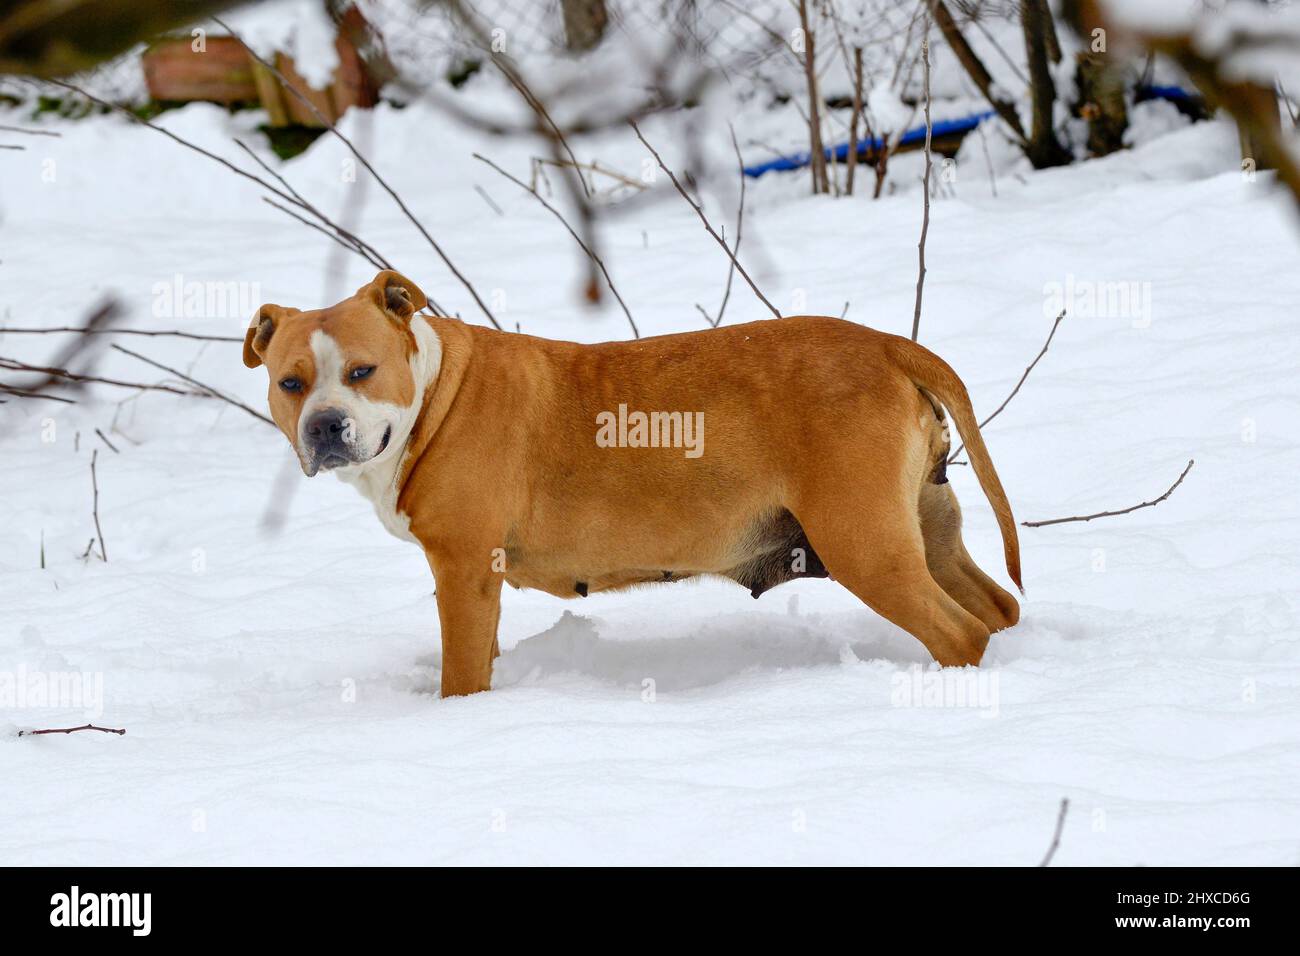 magnifique chien d'amstaff dans la forêt d'hiver. Mode de vie actif, randonnée et trekking avec les animaux en saison froide, emportant des chiens sur de longues promenades. Banque D'Images